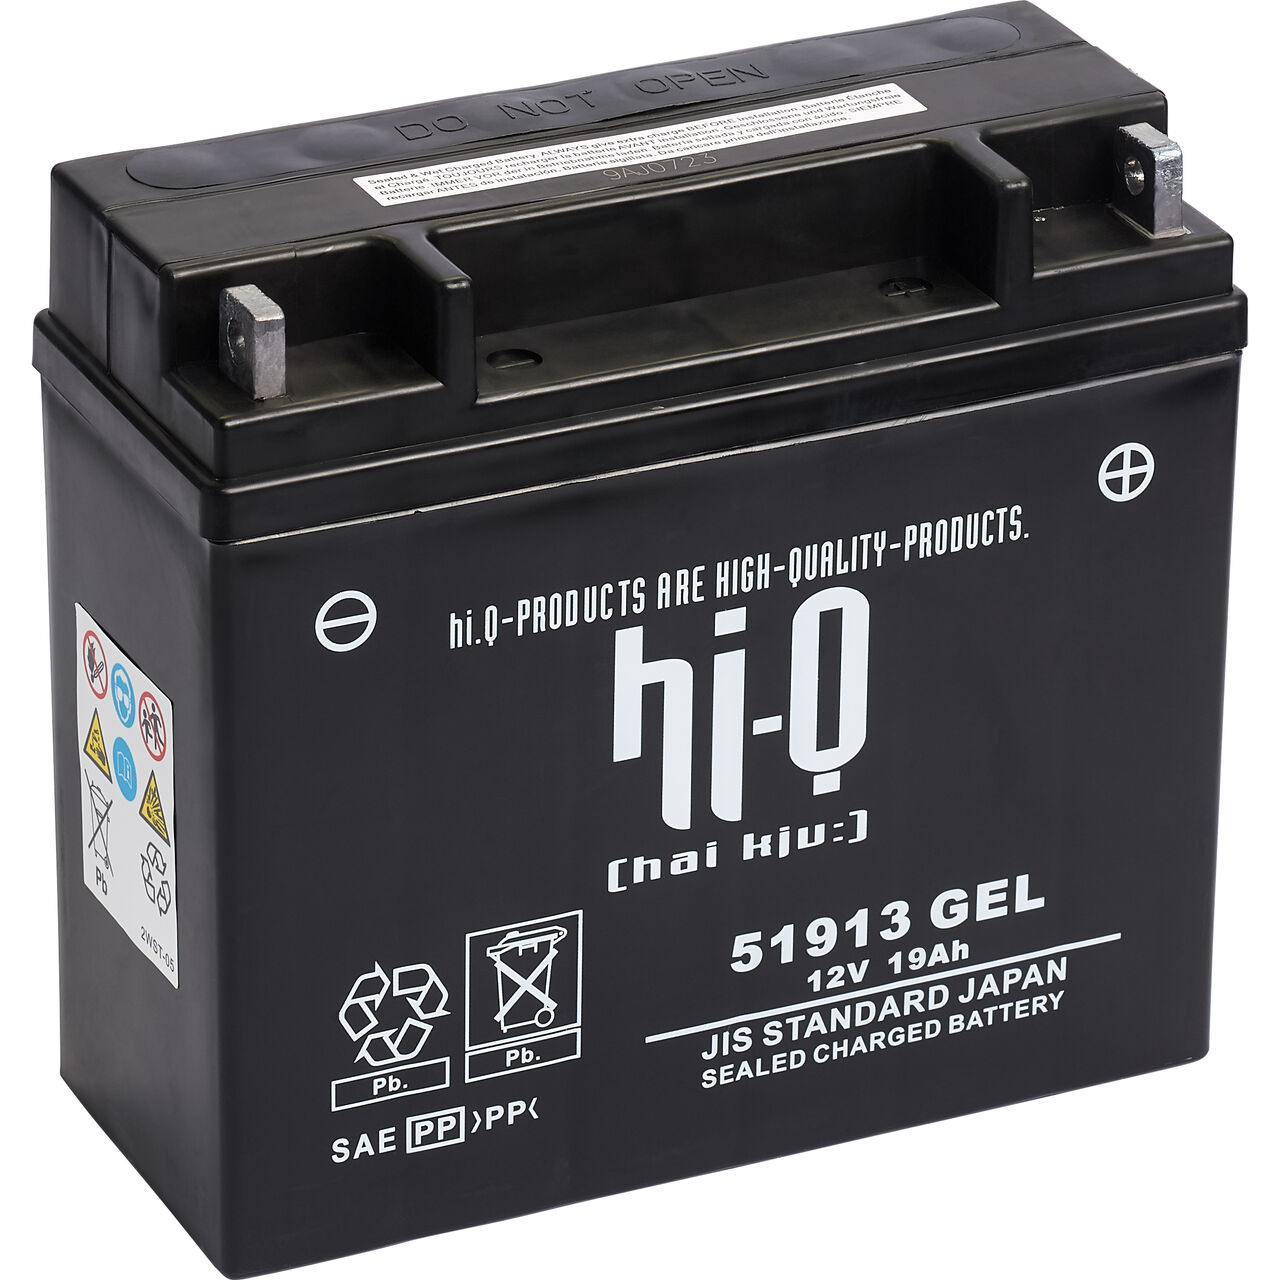 Hi-Q Batterie AGM Gel geschlossen 51913, 12 Volt, 19 Ah Neutral kaufen -  POLO Motorrad